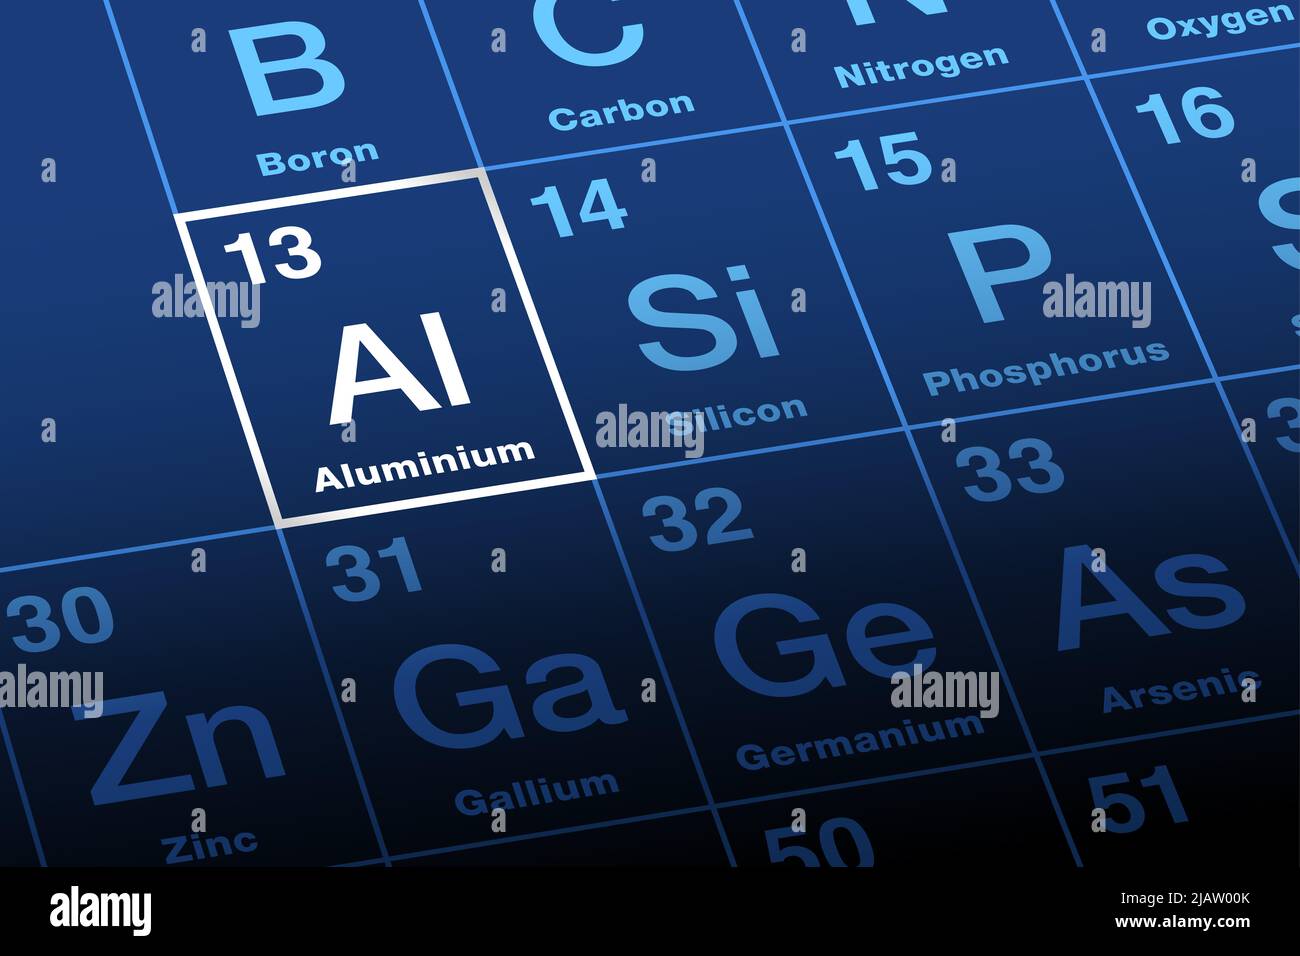 Aluminium, Aluminium auf Periodensystem der Elemente. Chemisches Element und Metall mit dem Symbol Al und der Ordnungszahl 13. Stockfoto